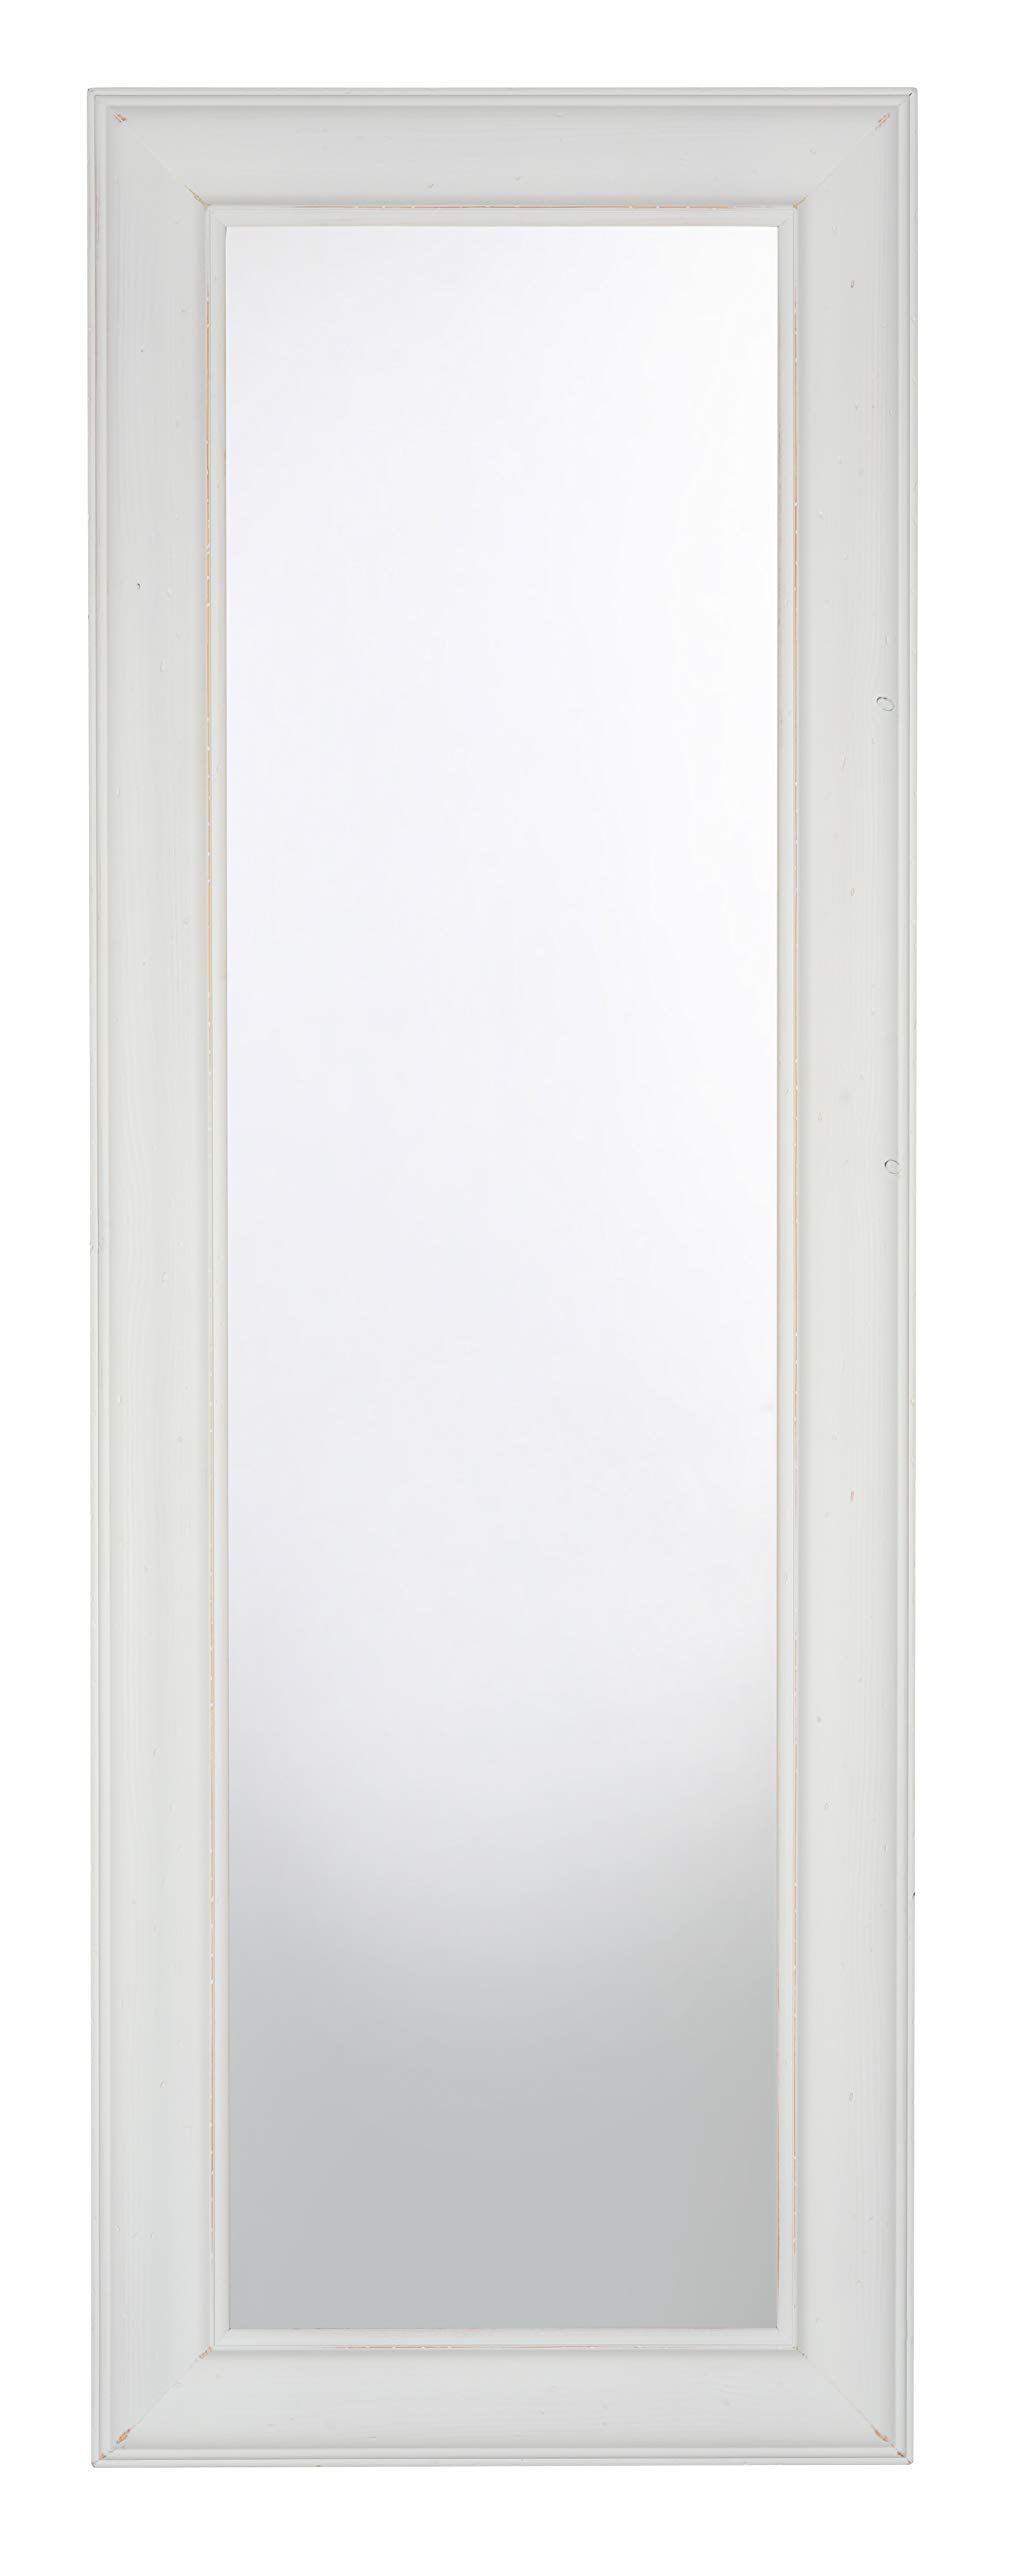 MO.WA Wandspiegel Spiegel Holzspiegel 51x146 Weiss Shabby, klassischer Spiegel Gardenrobenspiegel Landhaus Stil Ganzkörperspiegel Flurspiegel Bodenspiegel